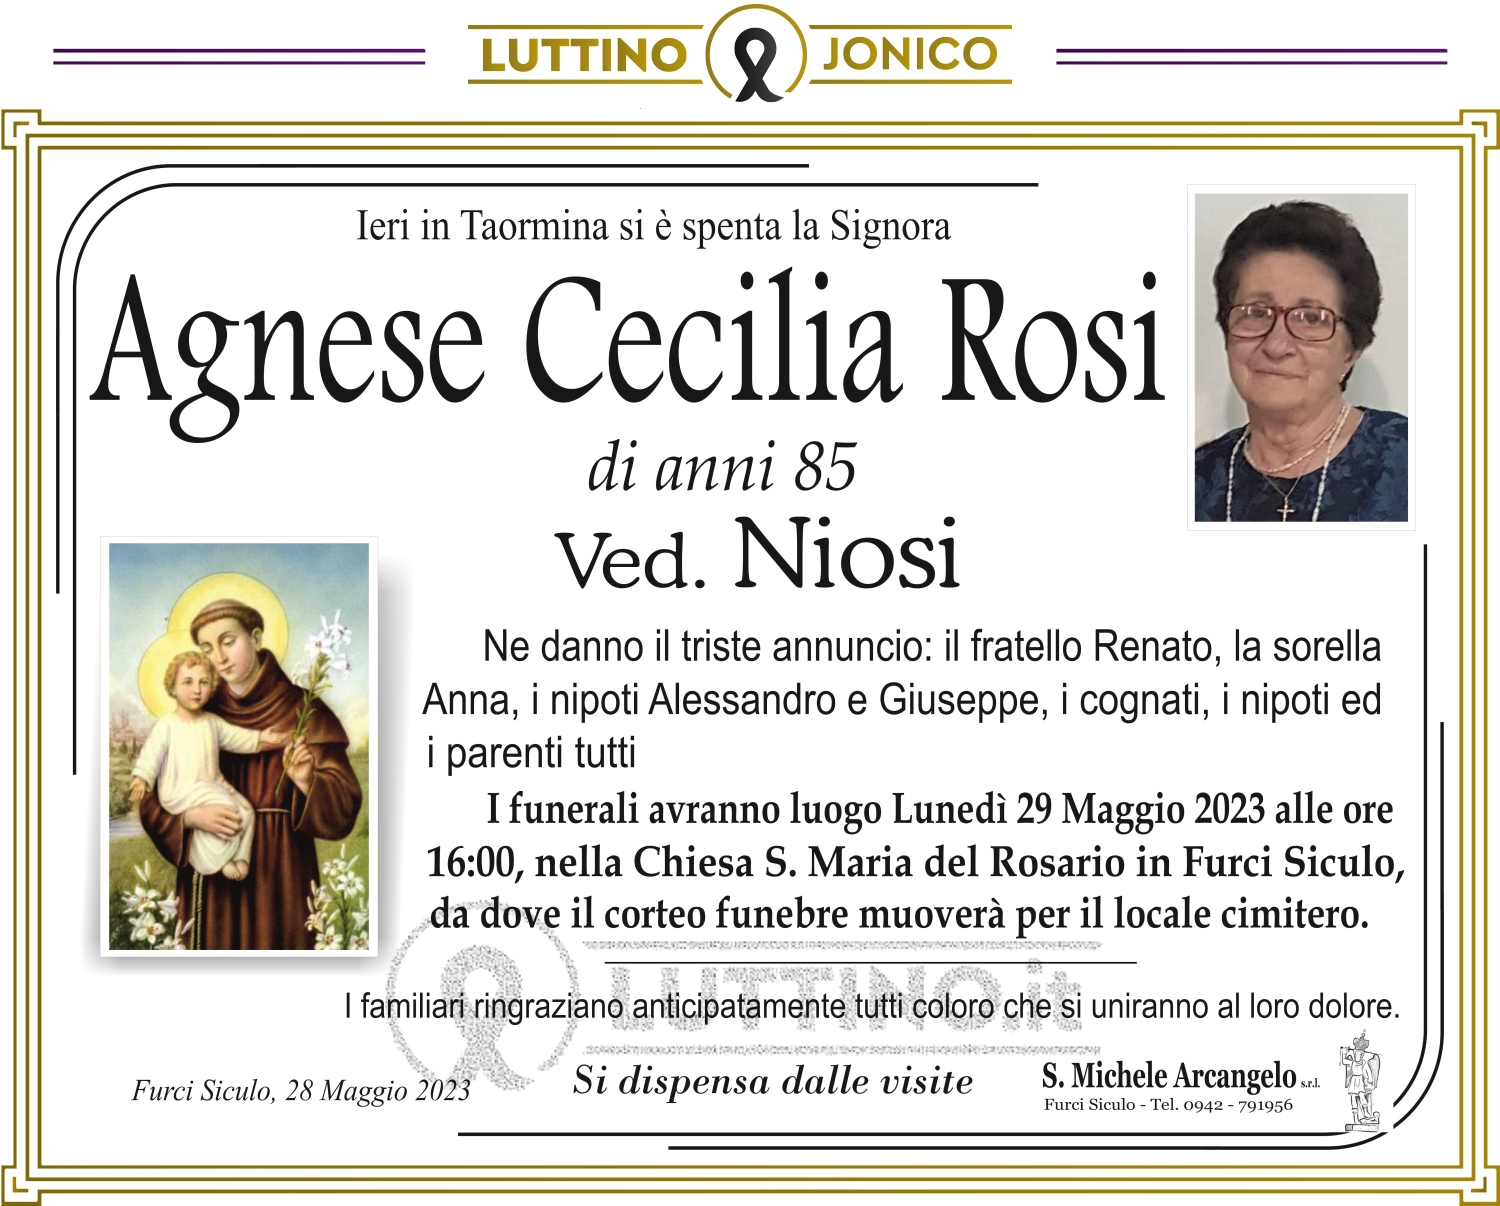 Agnese Cecilia Rosi